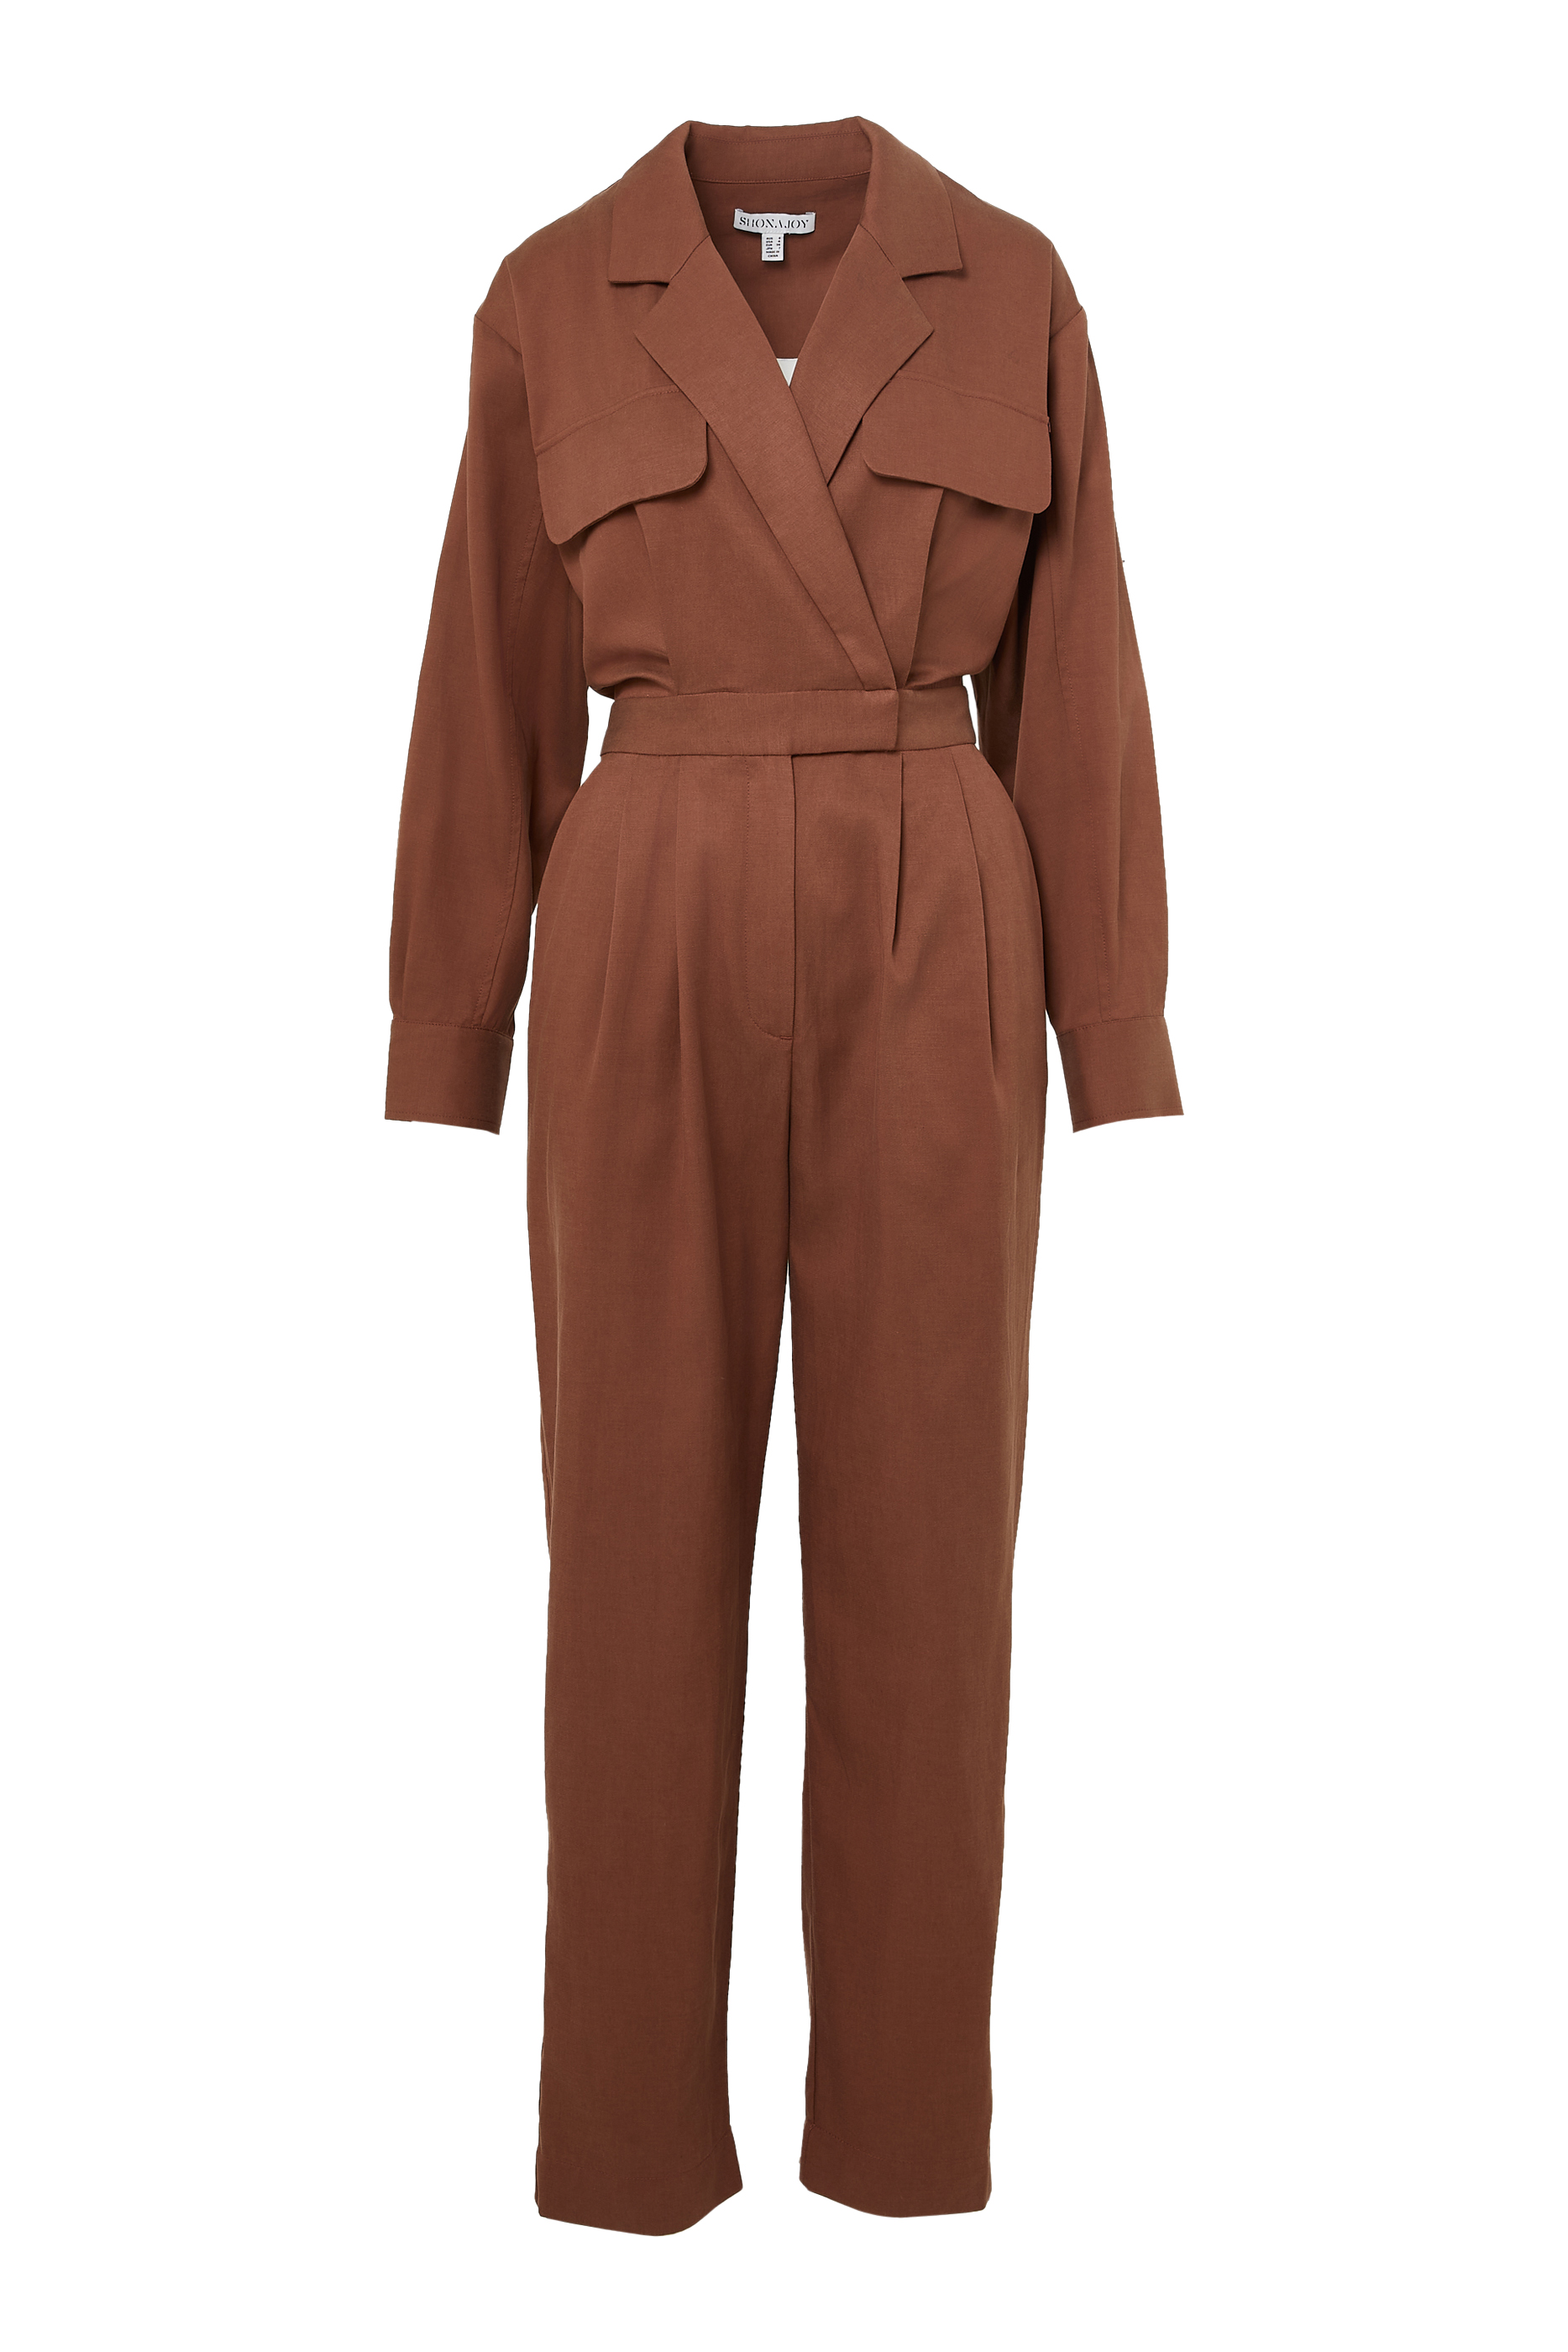 Buy Shona Joy Sara Lapel Boiler Suit for Womens | Bloomingdale's Kuwait